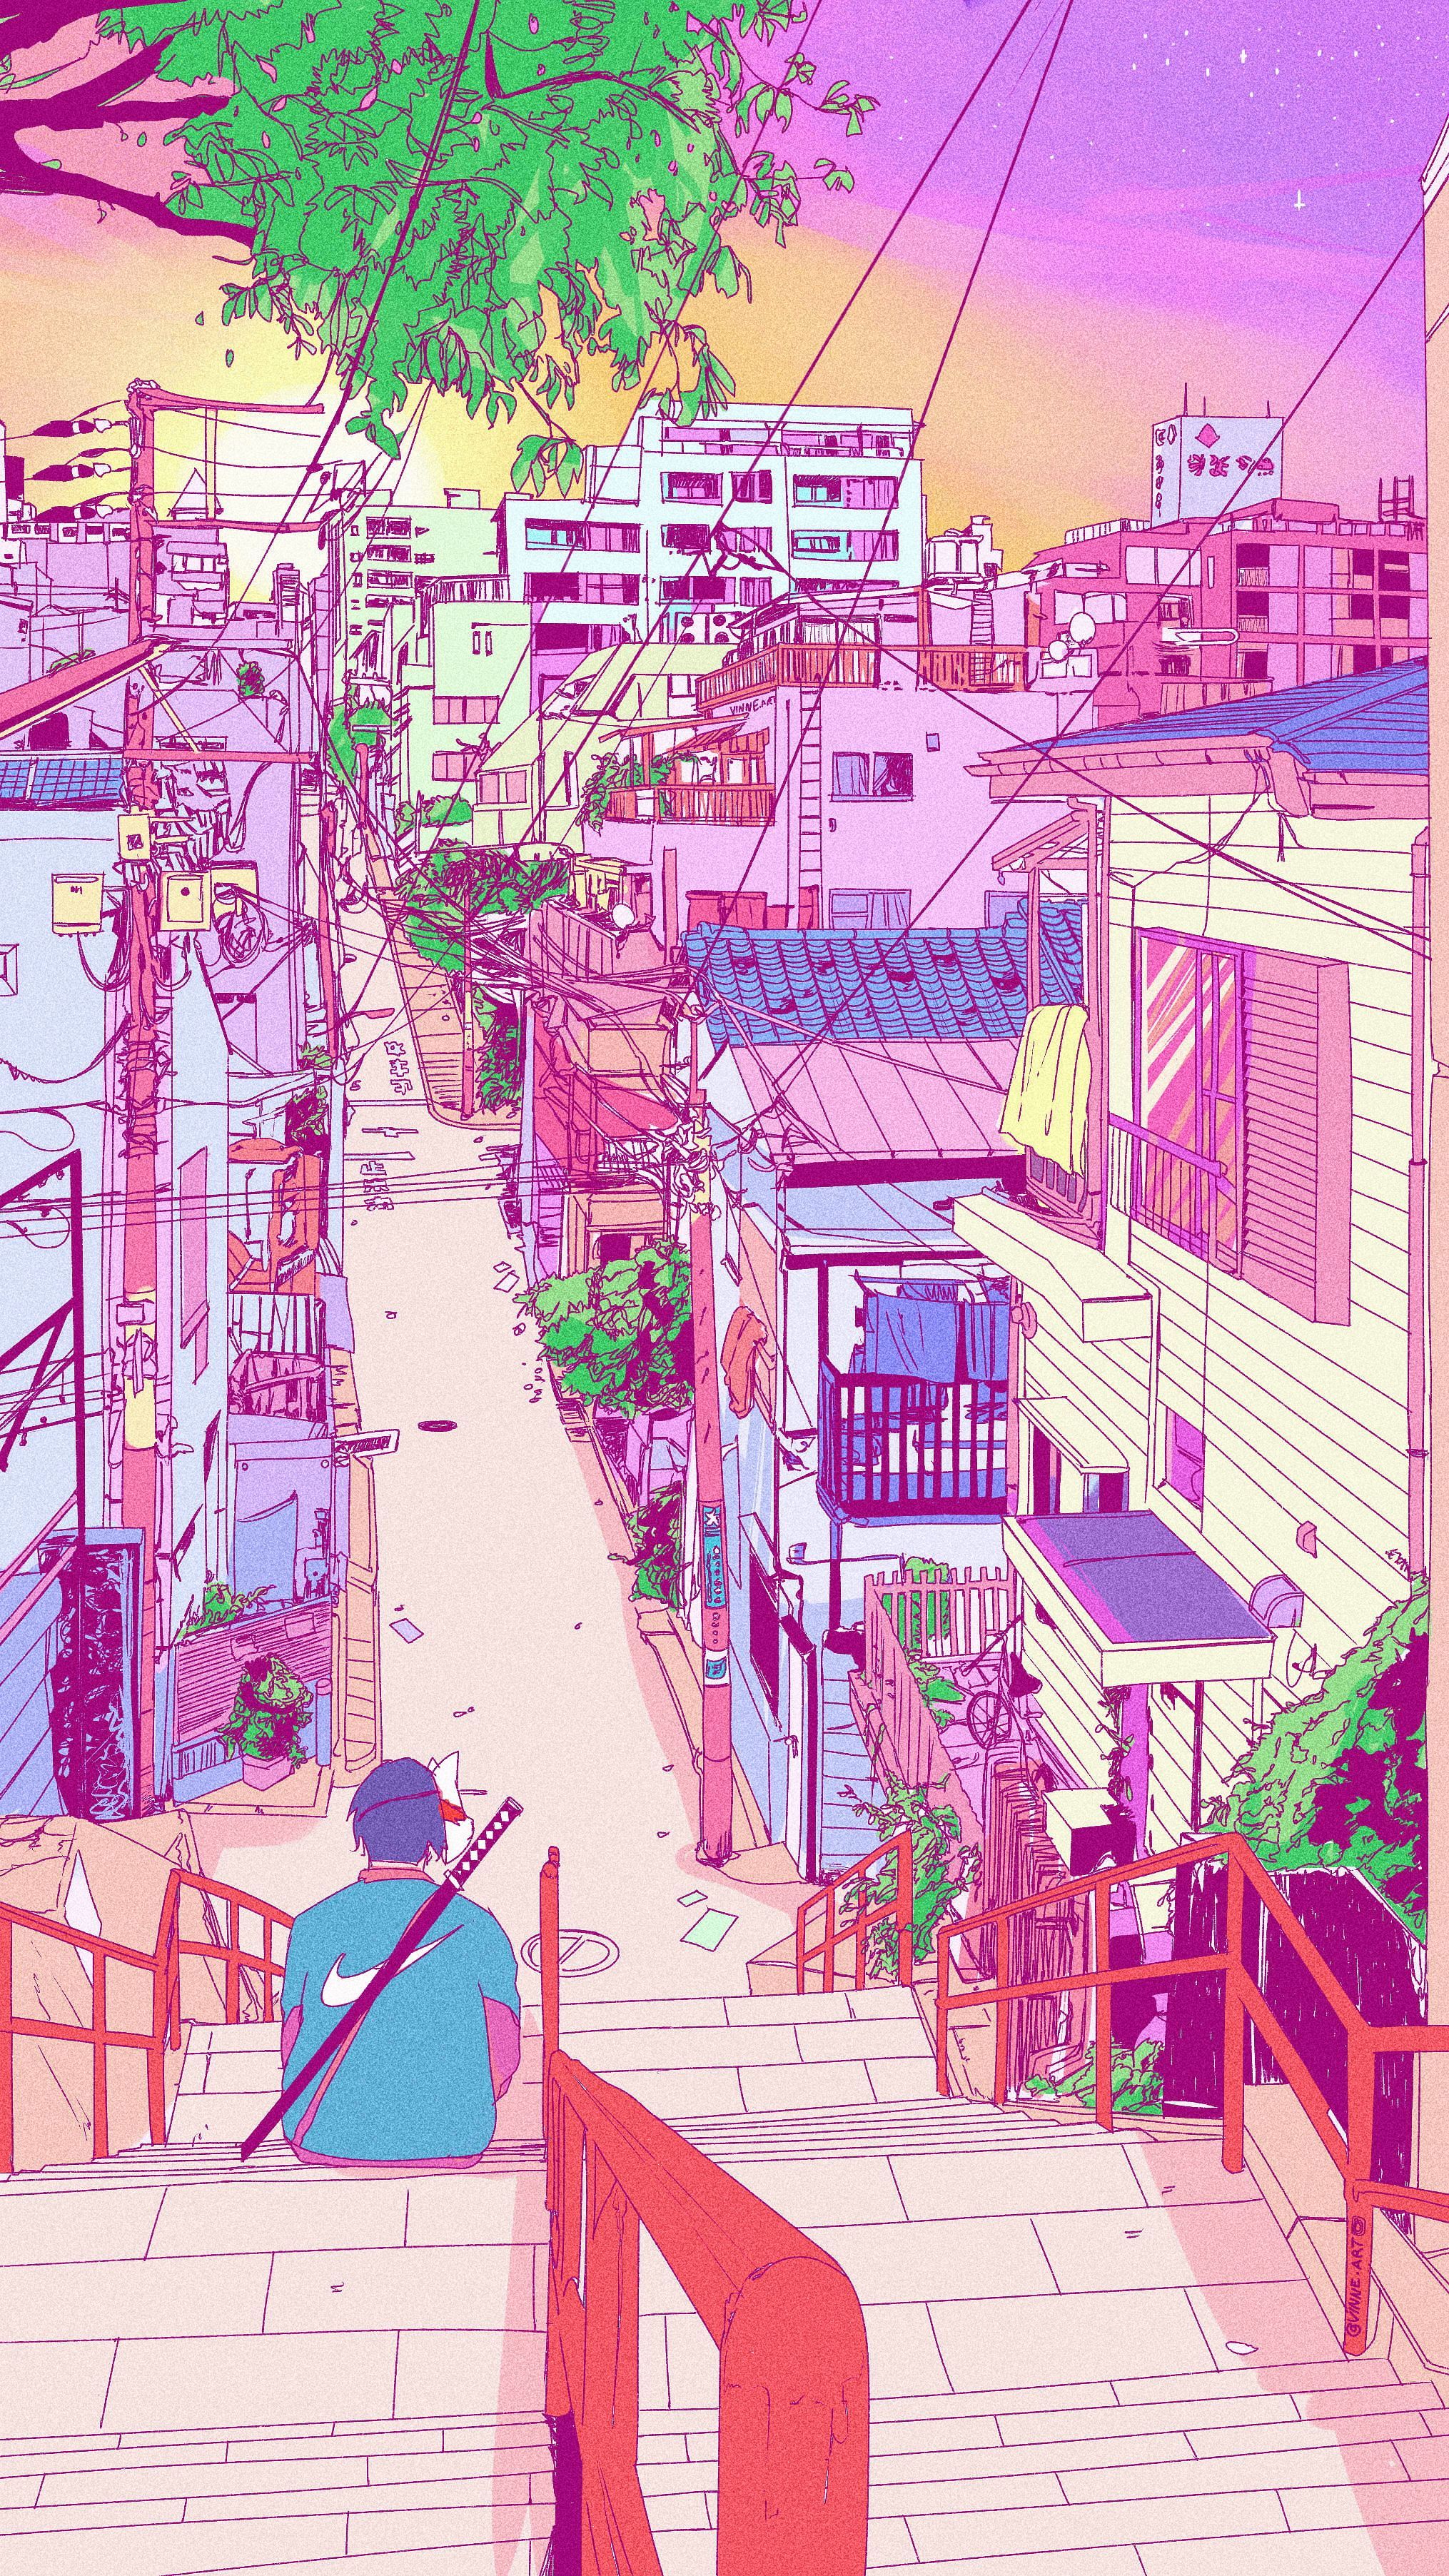 Retro Aesthetic Art Aesthetic Wallpaper Anime. Anime scenery wallpaper, Scenery wallpaper, Aesthetic wallpaper